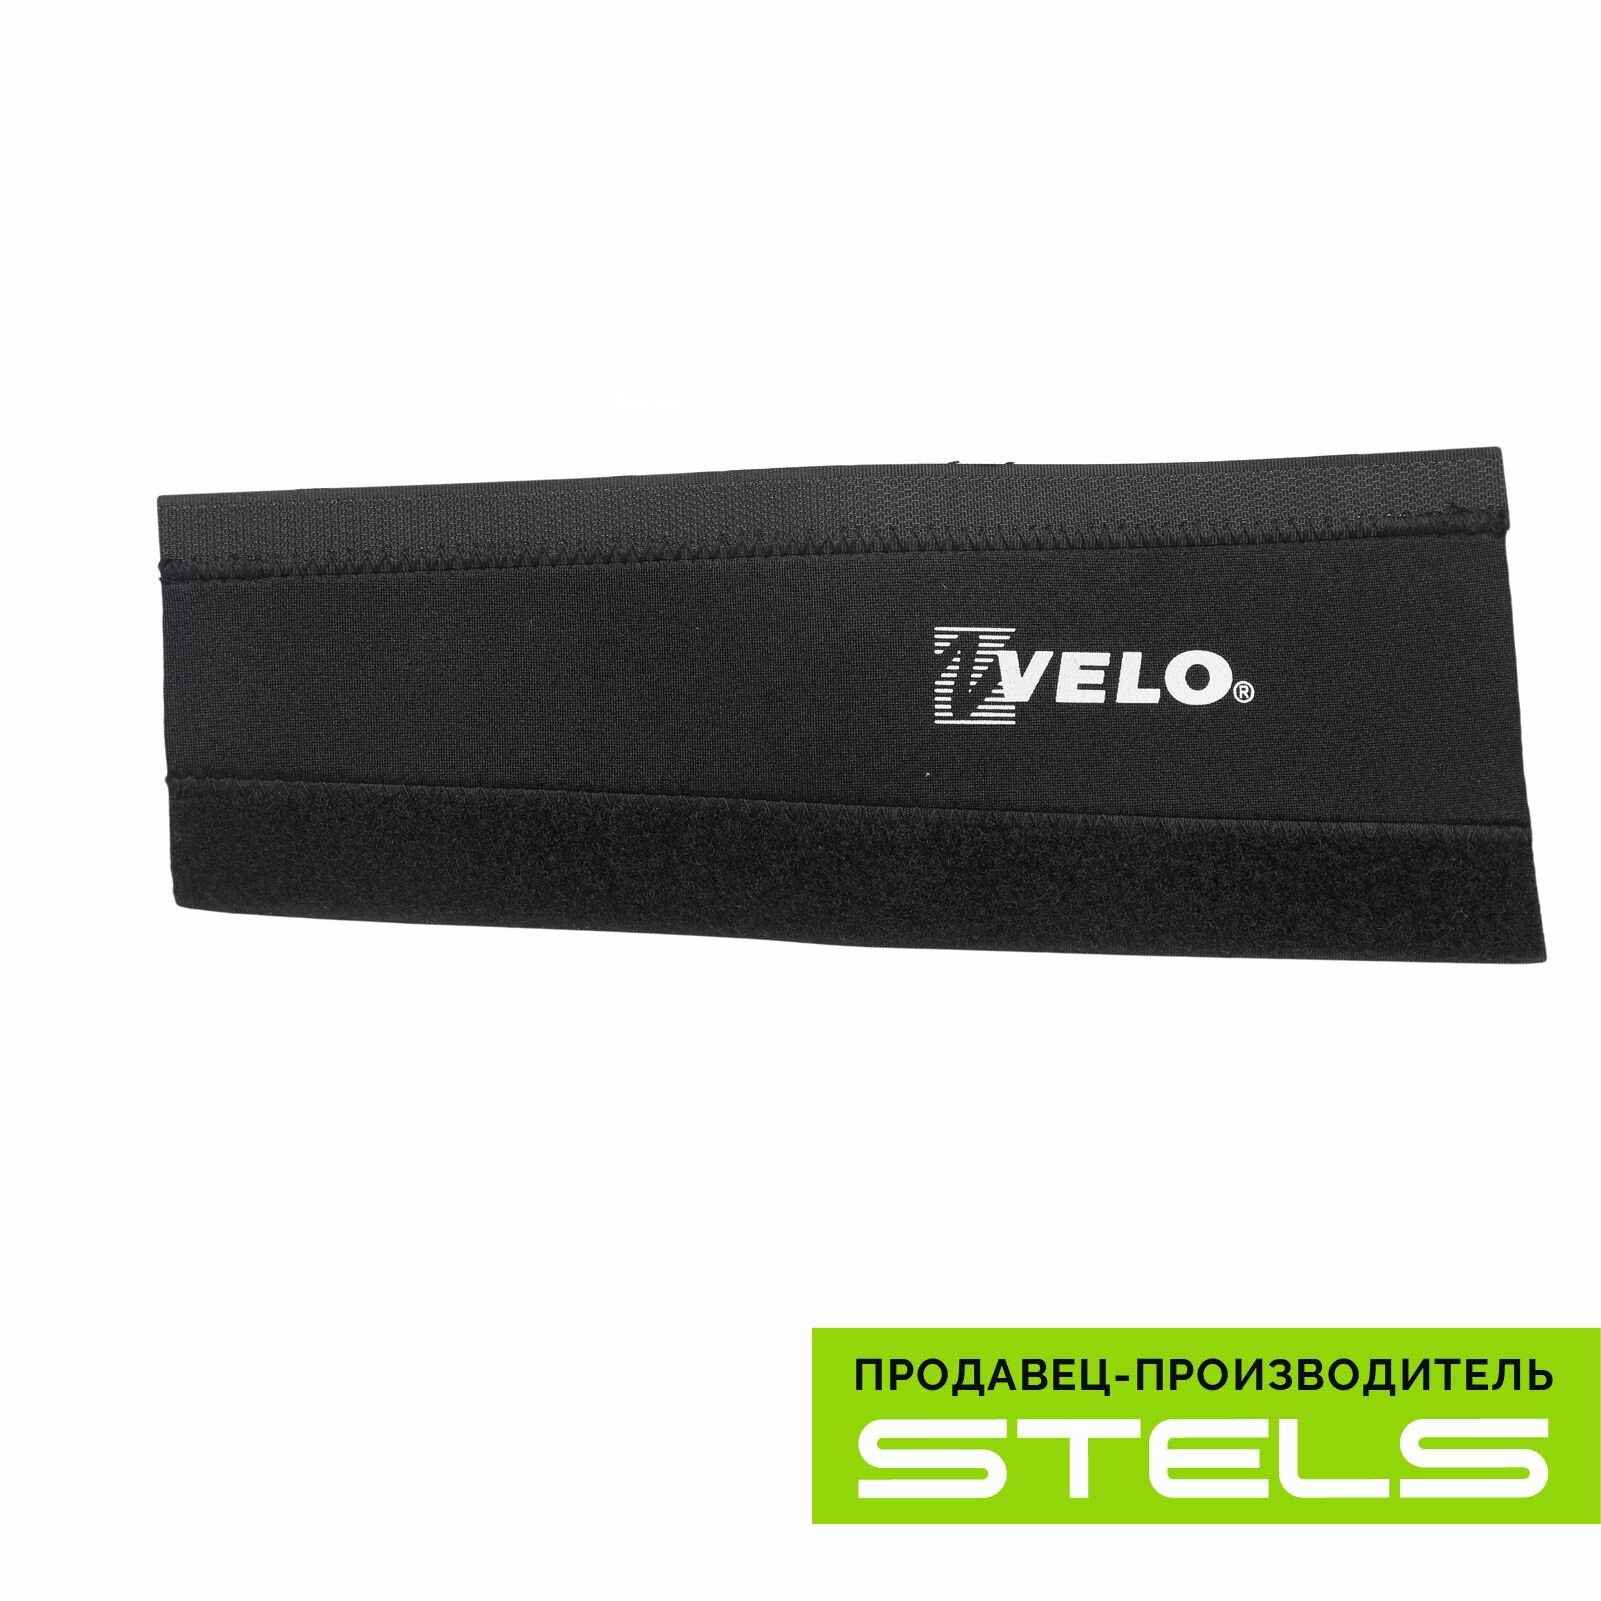 Защита пера велосипеда Velo VLF-001 NEW